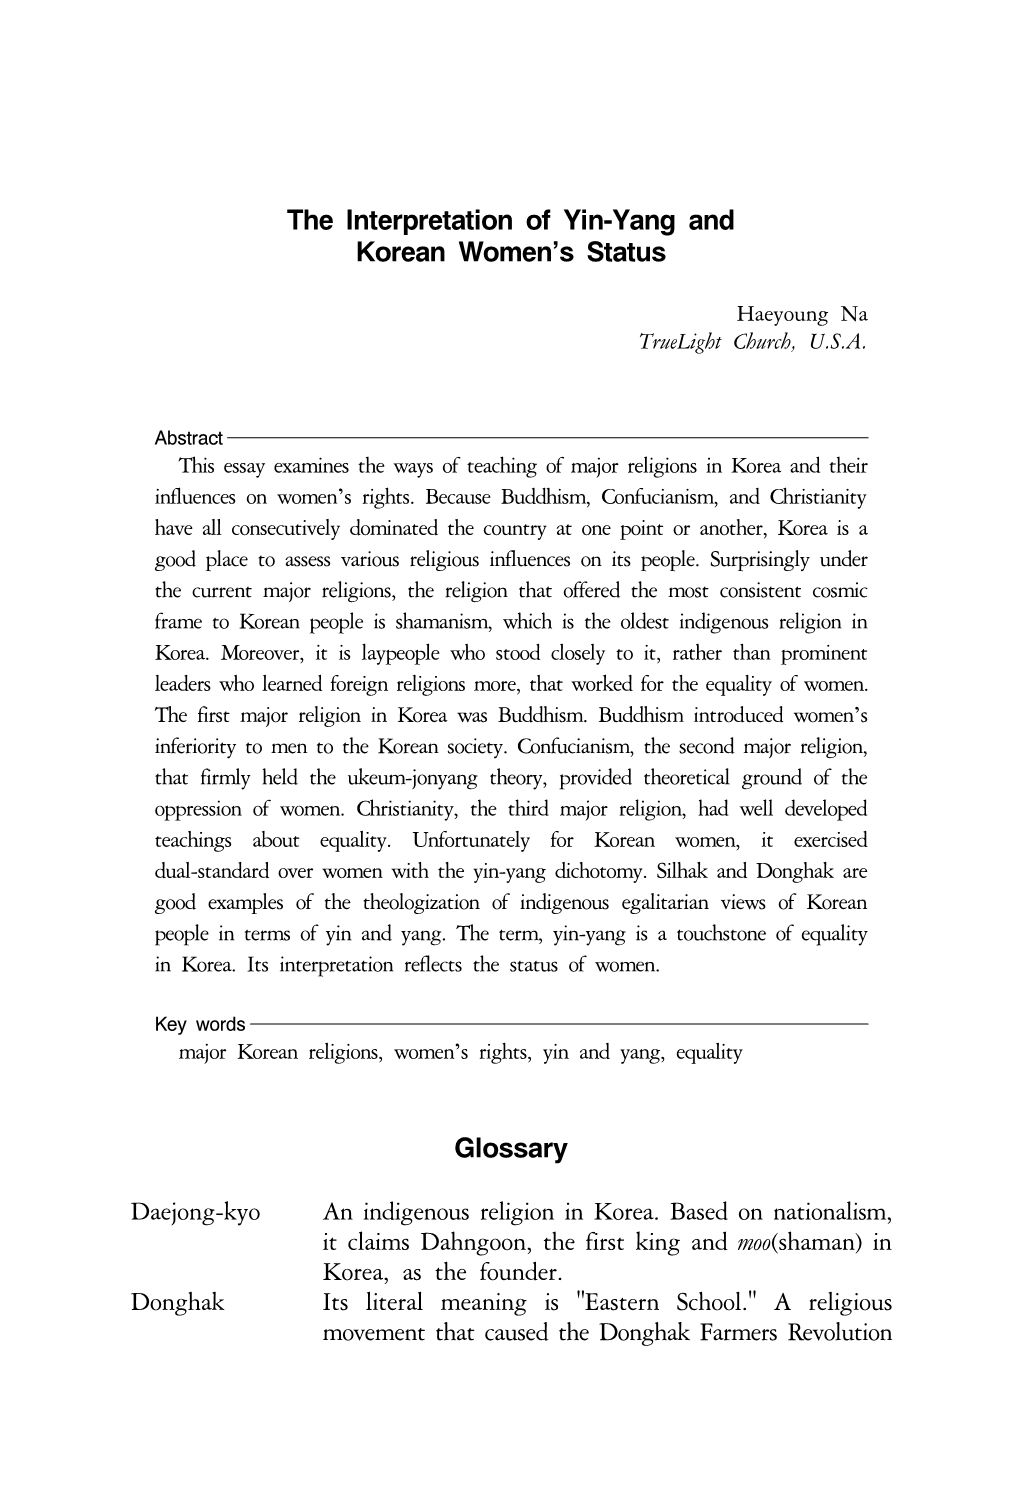 The Interpretation of Yin-Yang and Korean Women's Status Glossary